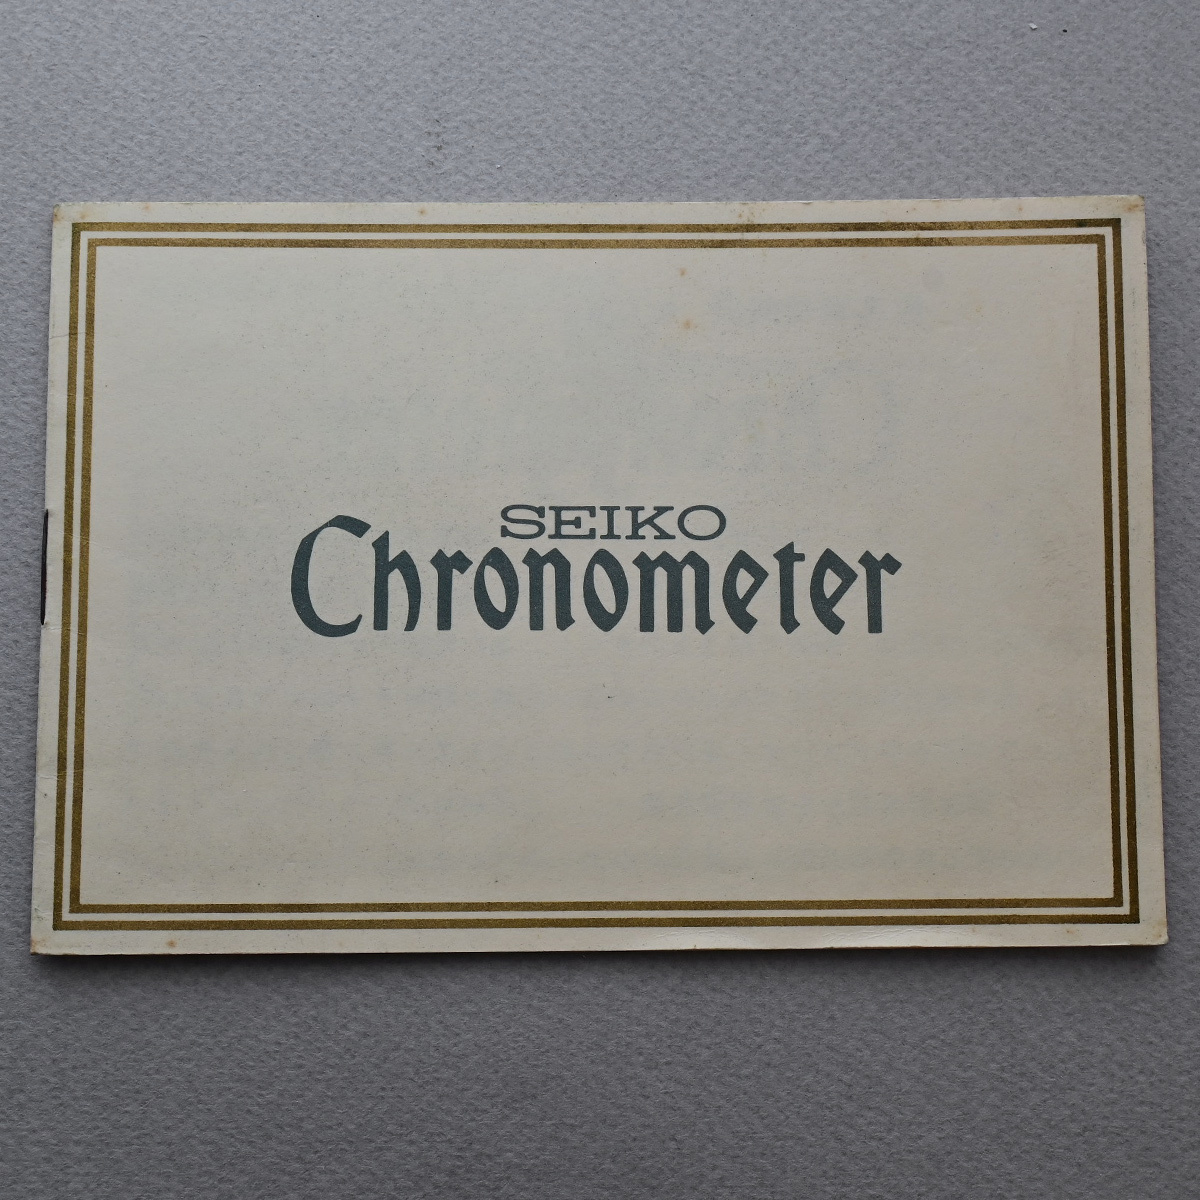 【取説のみ】 セイコー クロノメーター 説明書 最高級腕時計 SEIKO Chronometer_セイコー クロノメーター 説明書